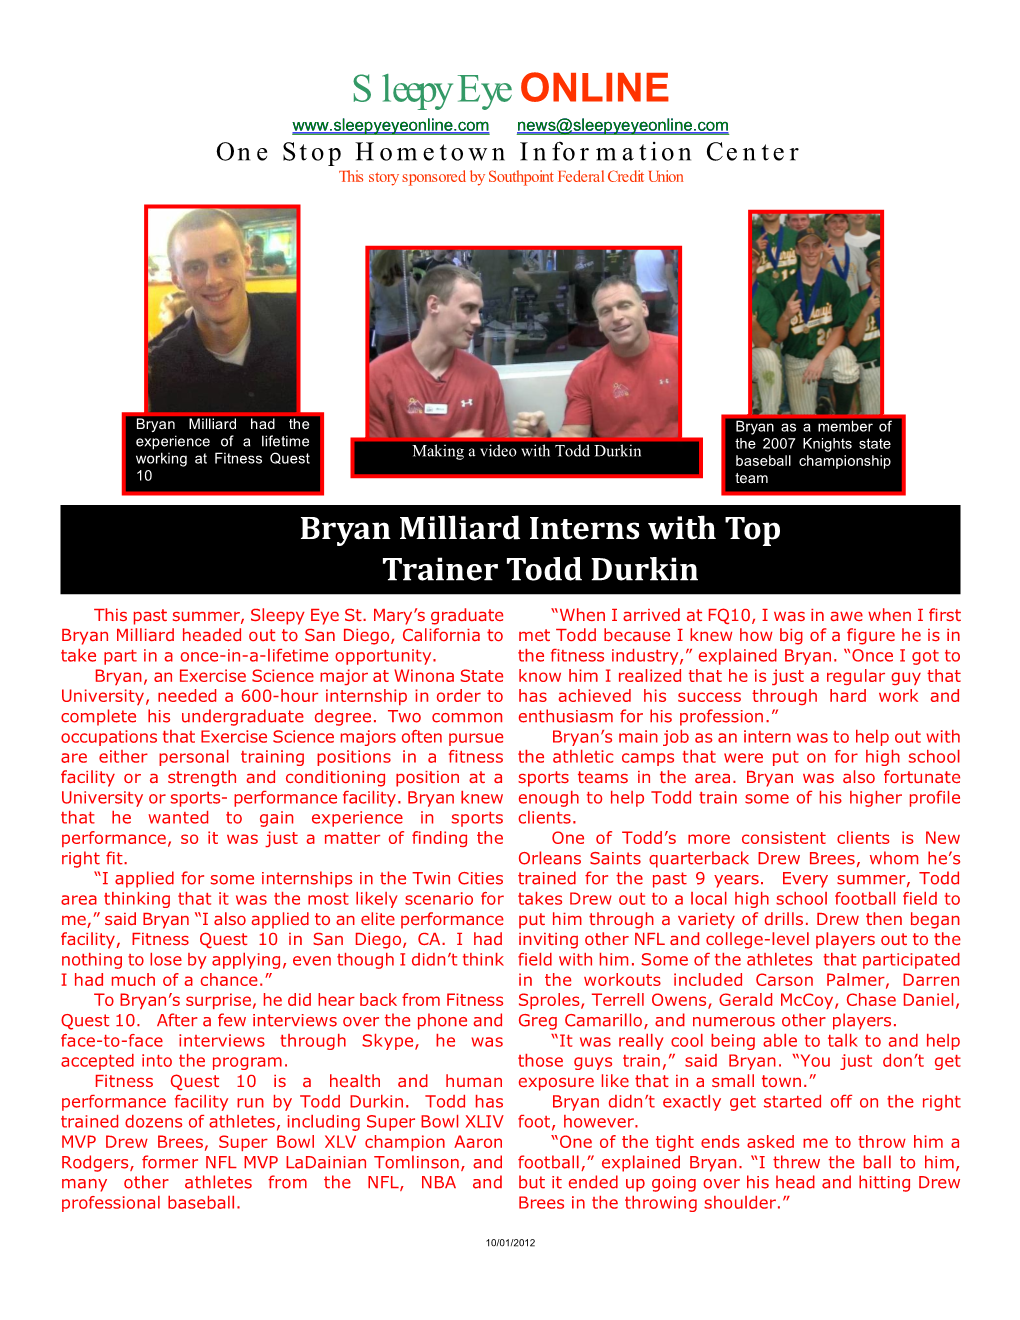 Bryan Millard Interns with Famous Trainer Todd Durkin